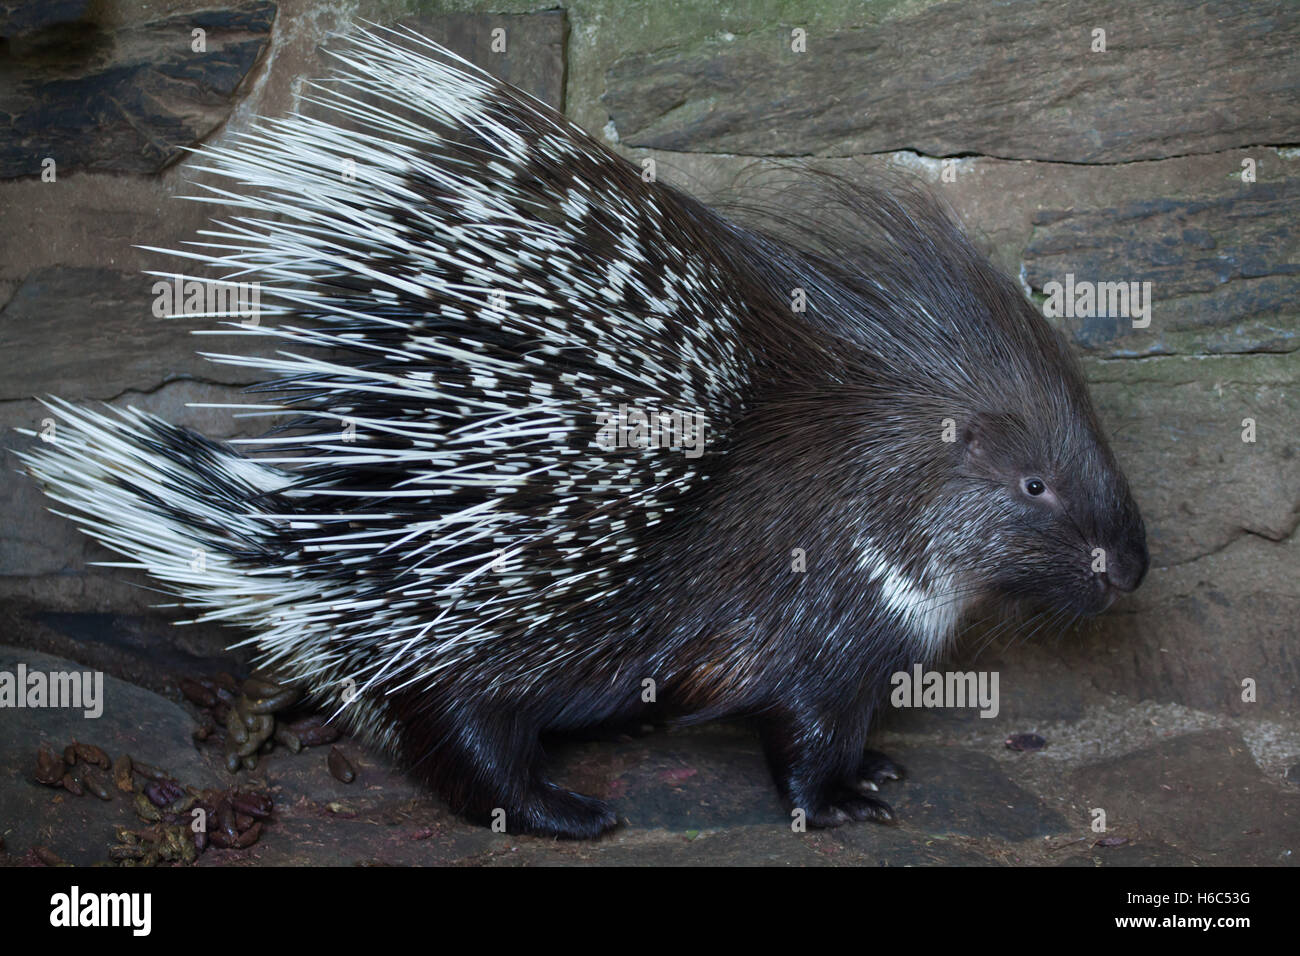 Indian porc-épic (Hystrix indica), également connu sous le nom de Porcupine indien. Des animaux de la faune. Banque D'Images